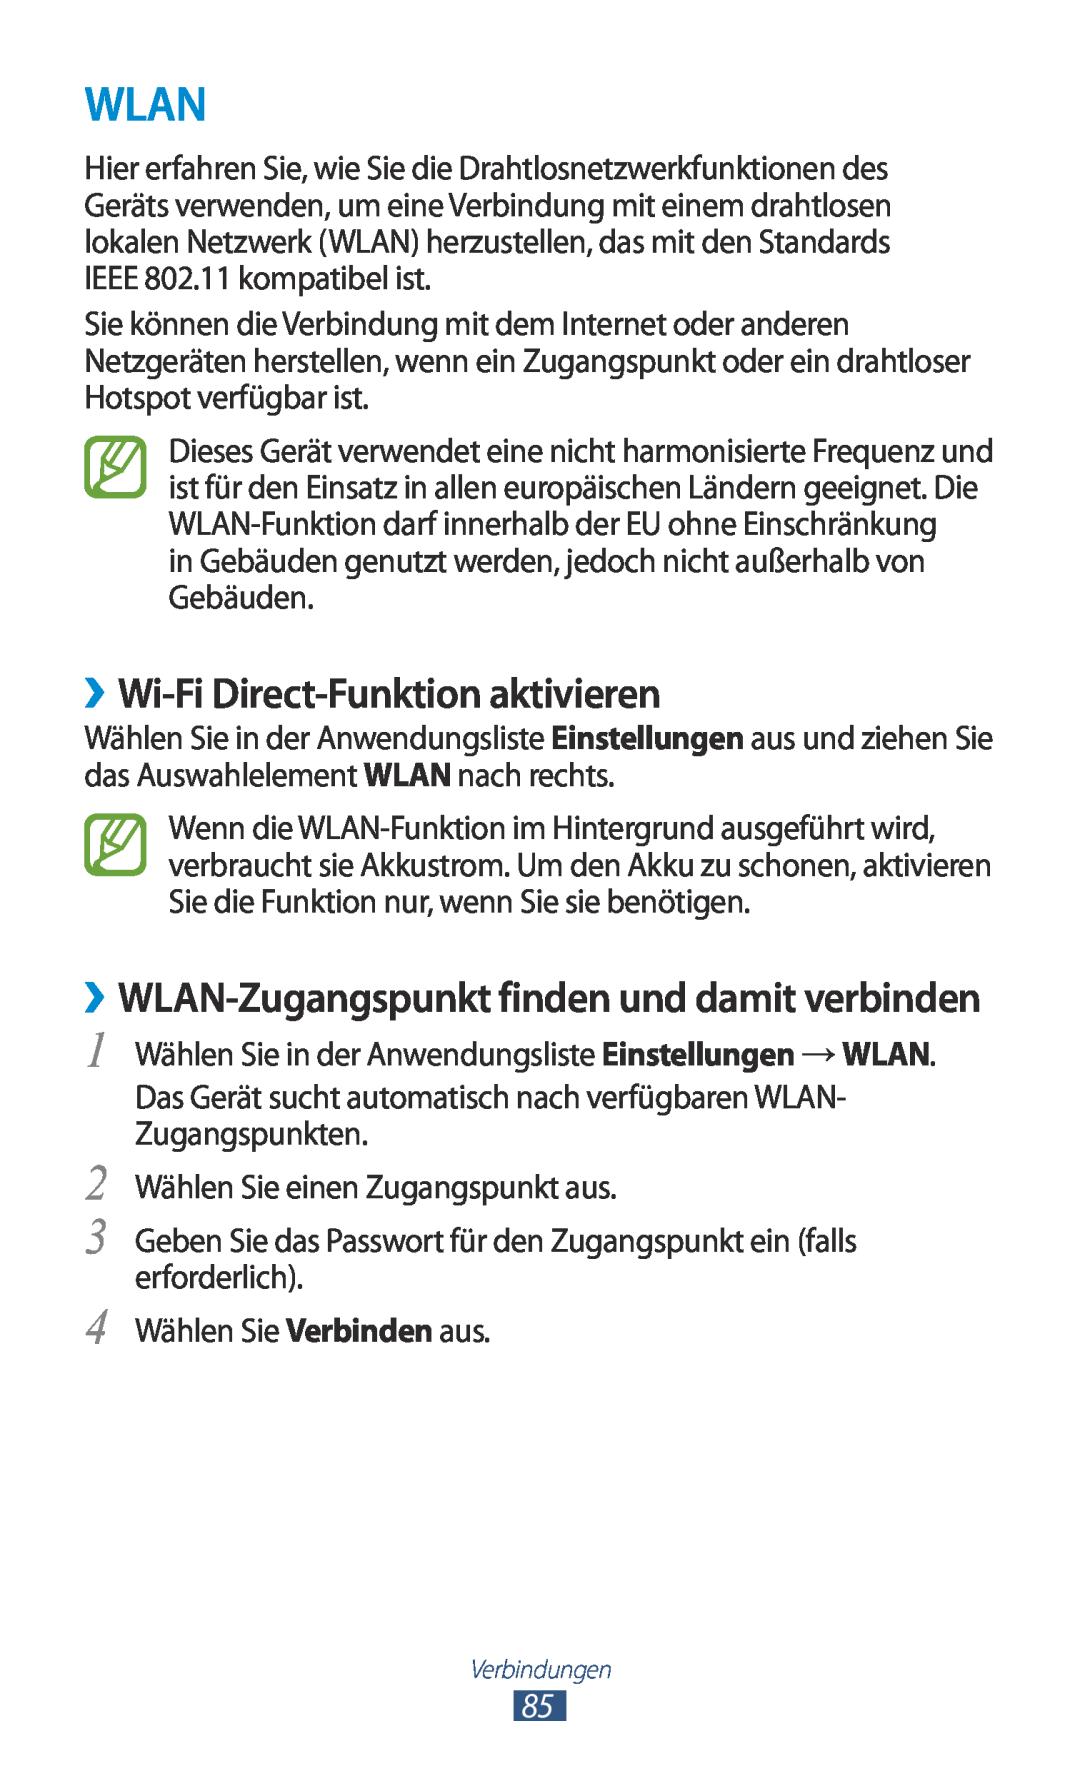 Samsung GT-P3110ZWATUR manual Wlan, ››Wi-Fi Direct-Funktion aktivieren, ››WLAN-Zugangspunkt finden und damit verbinden 